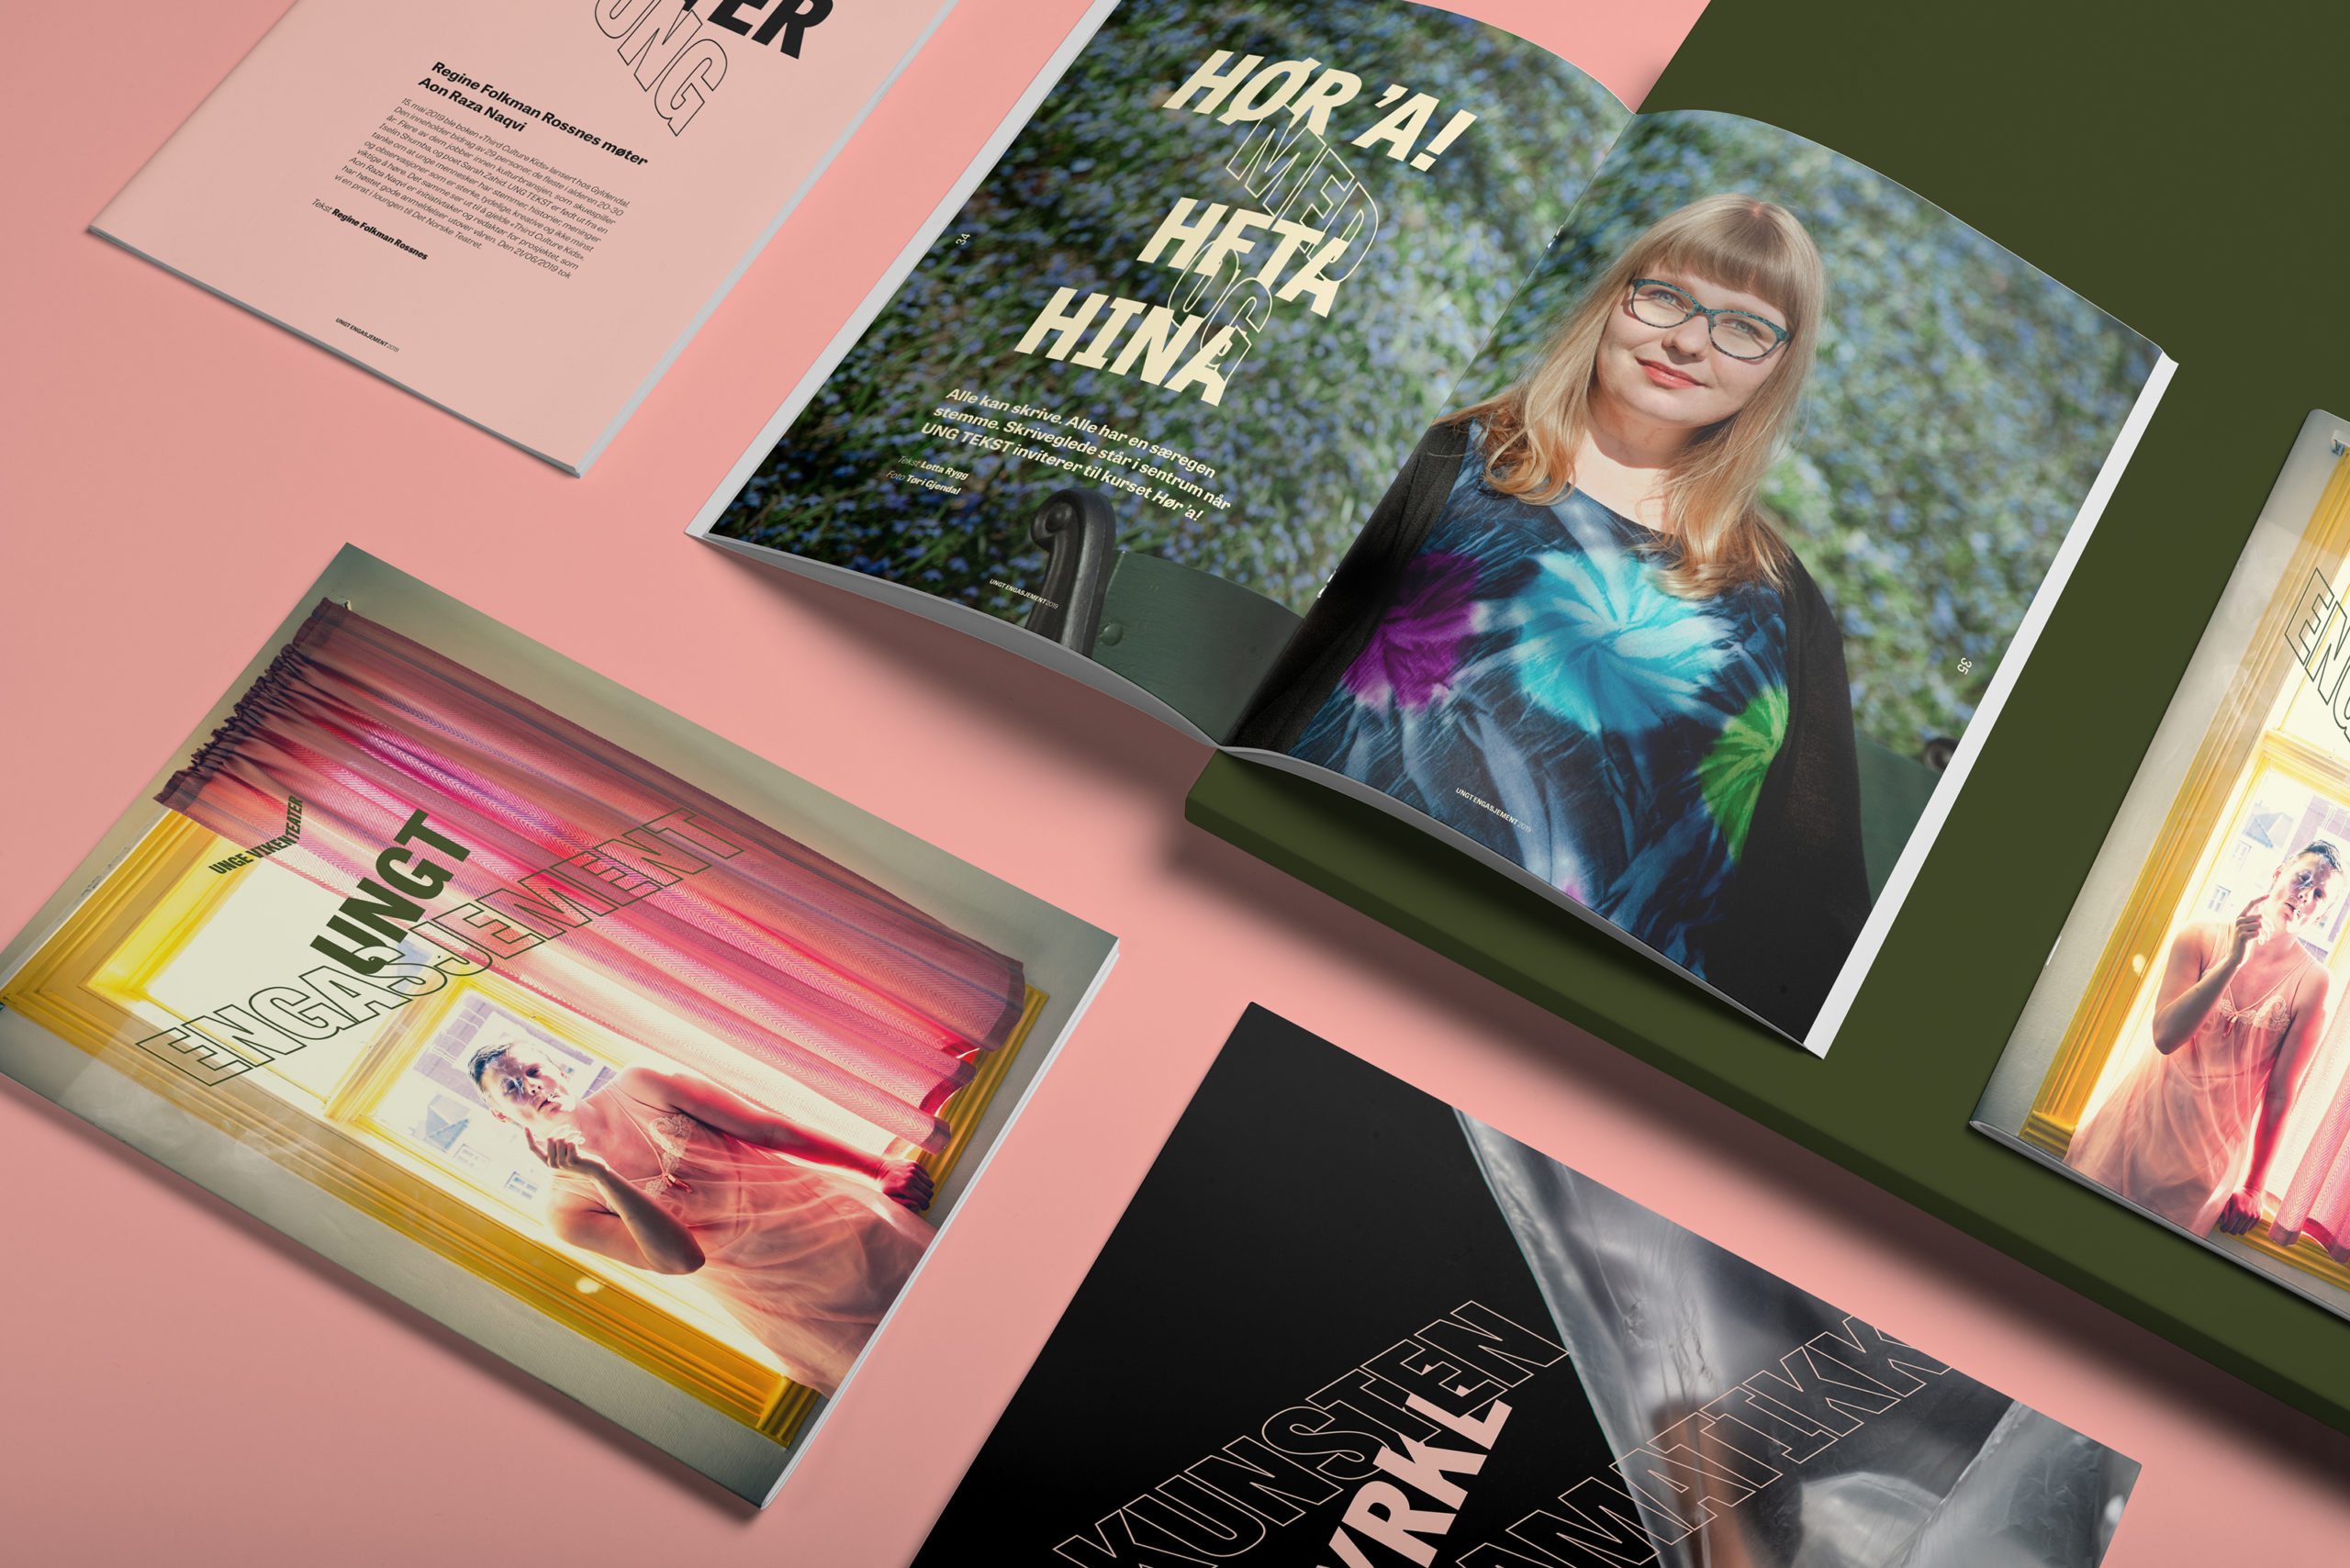 Fotografi: Bildet viser et utvalg av magasiner fotografert på et rosa bord.